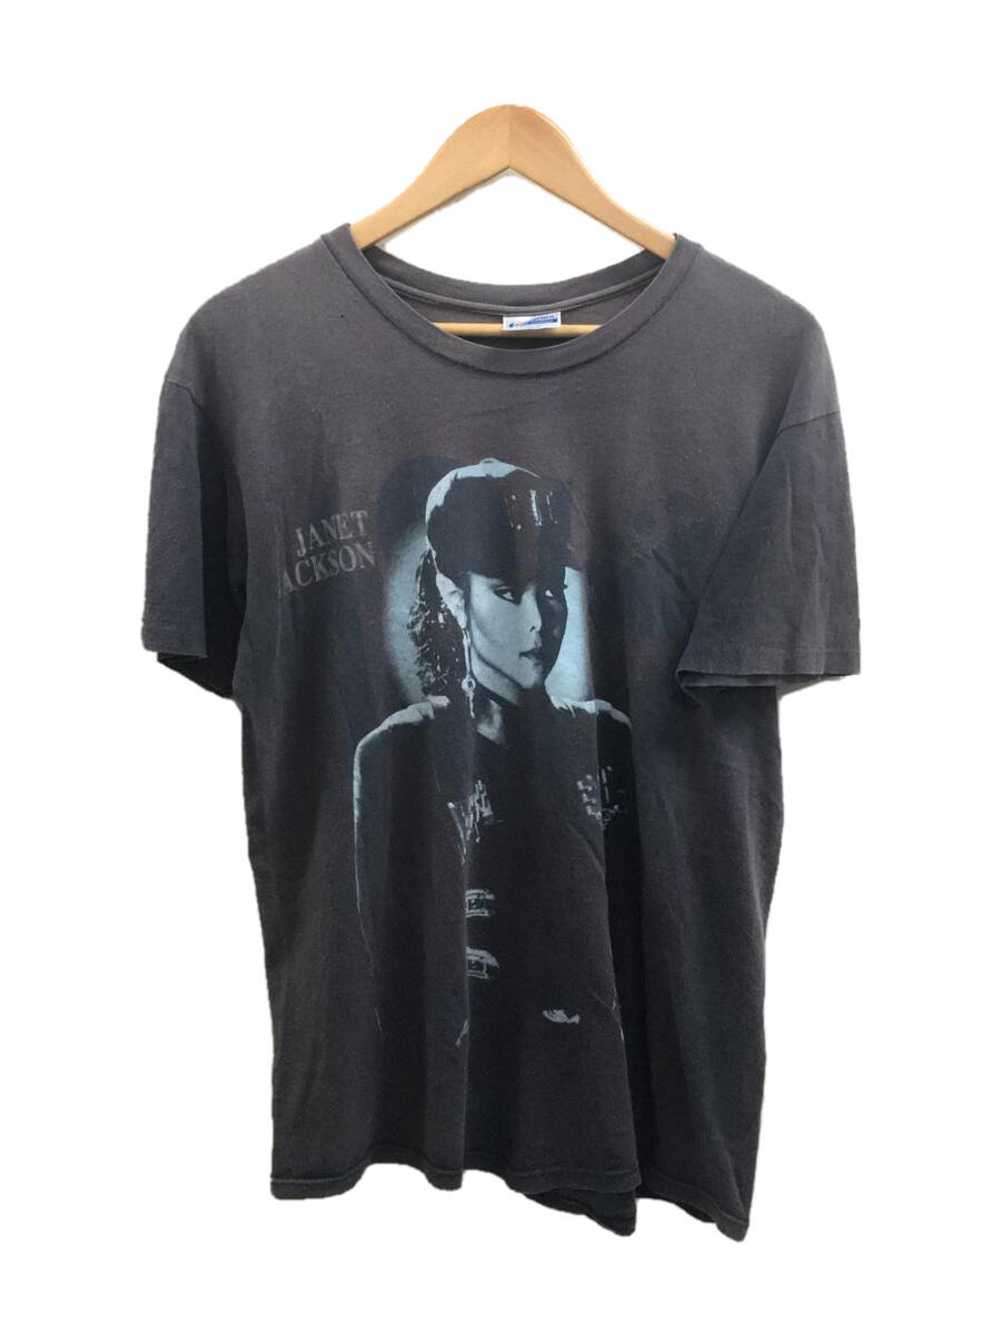 90s T-shirt Hanes 90S/1990 /Janet Jackson/Tour T/… - image 1